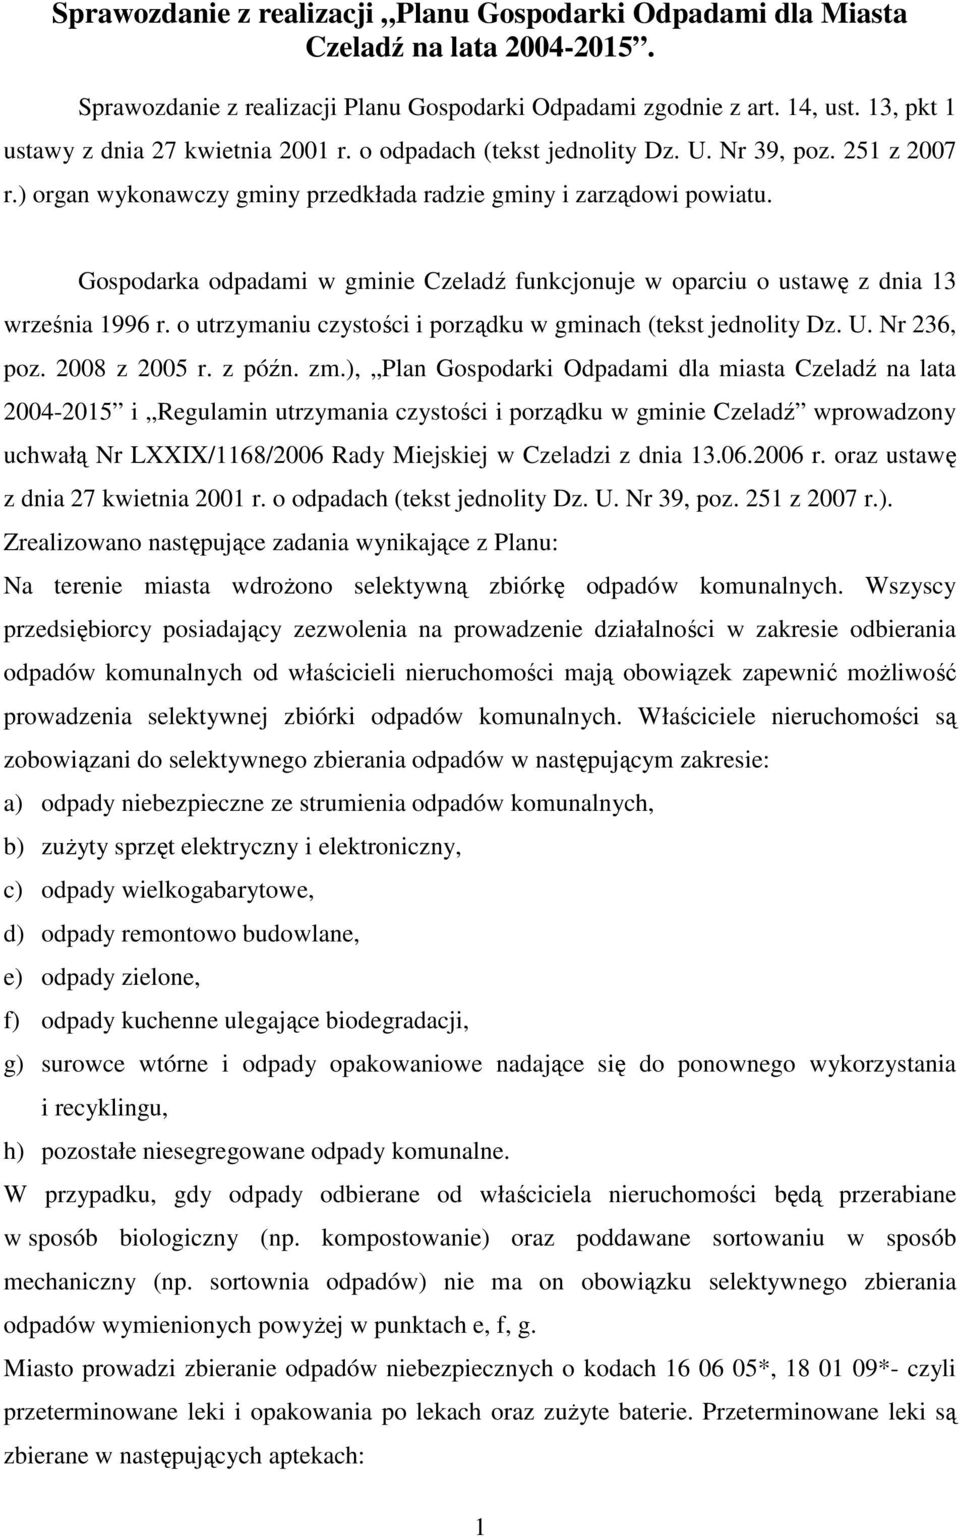 Gospodarka odpadami w gminie Czeladź funkcjonuje w oparciu o ustawę z dnia 13 września 1996 r. o utrzymaniu czystości i porządku w gminach (tekst jednolity Dz. U. Nr 236, poz. 2008 z 2005 r. z późn.